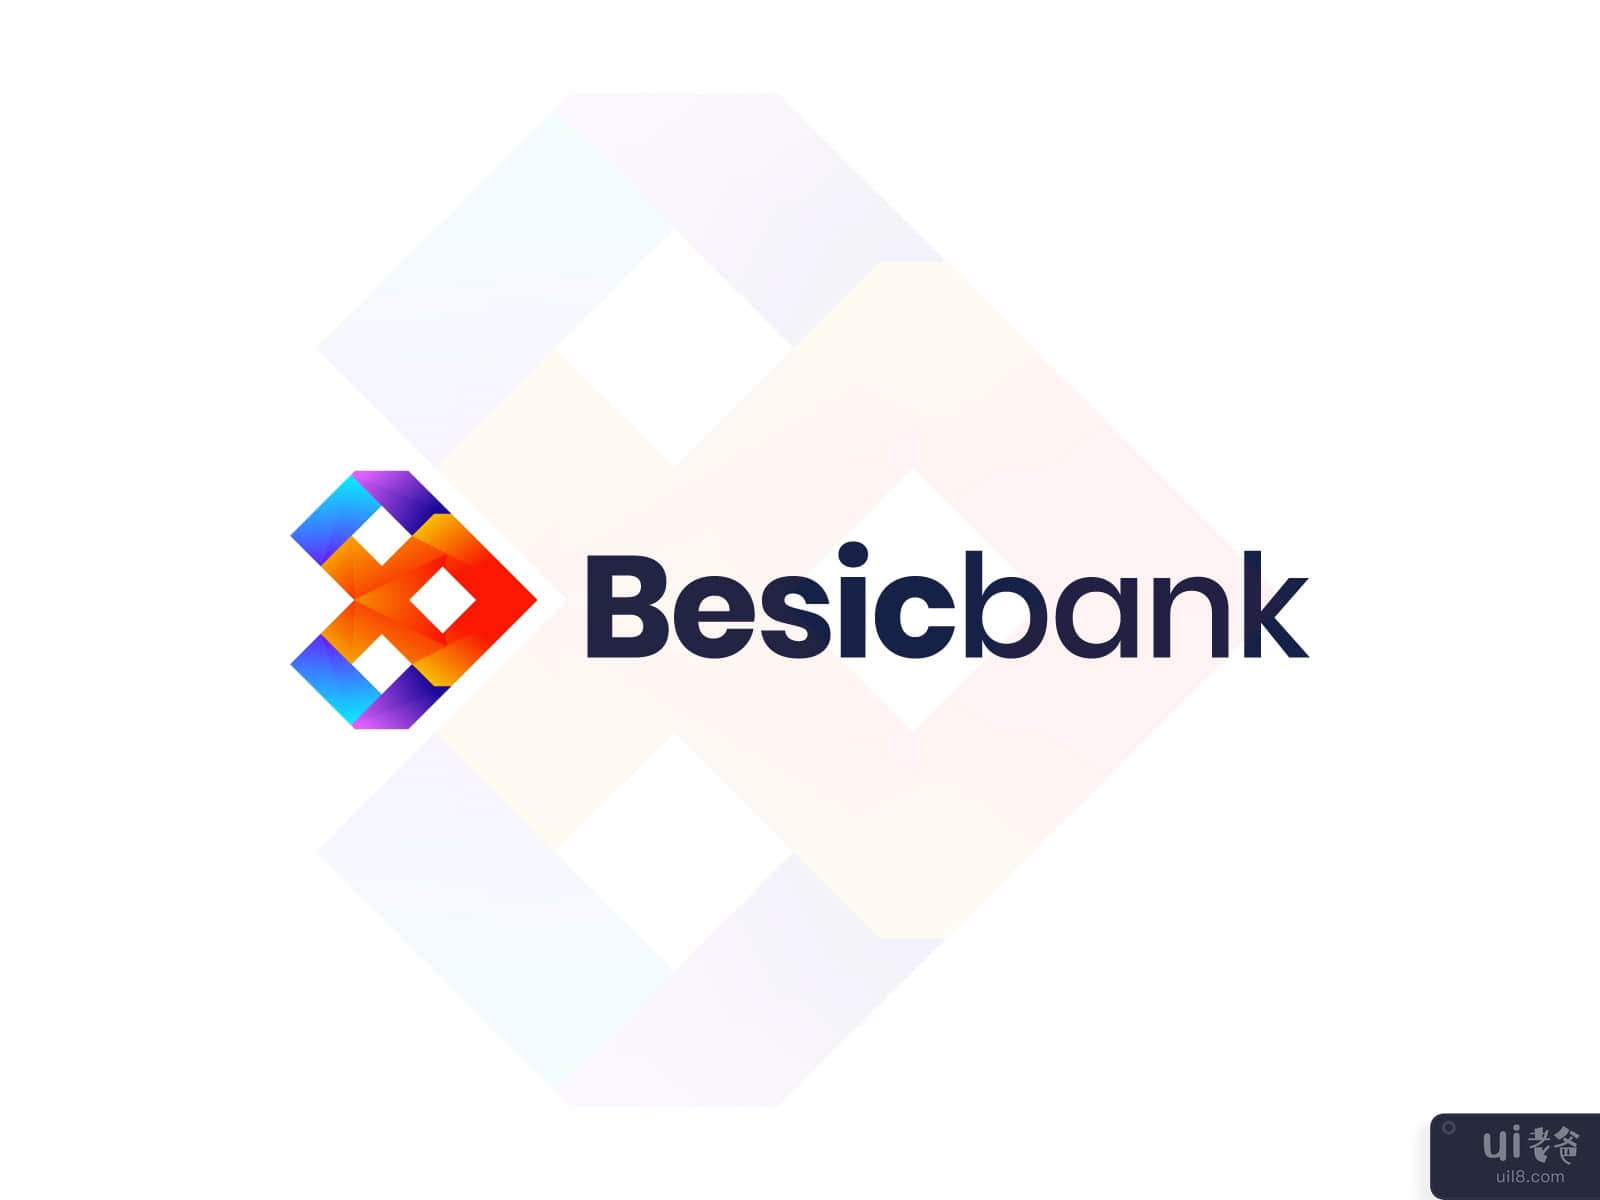 b letter modern logo design, banking logo, company branding